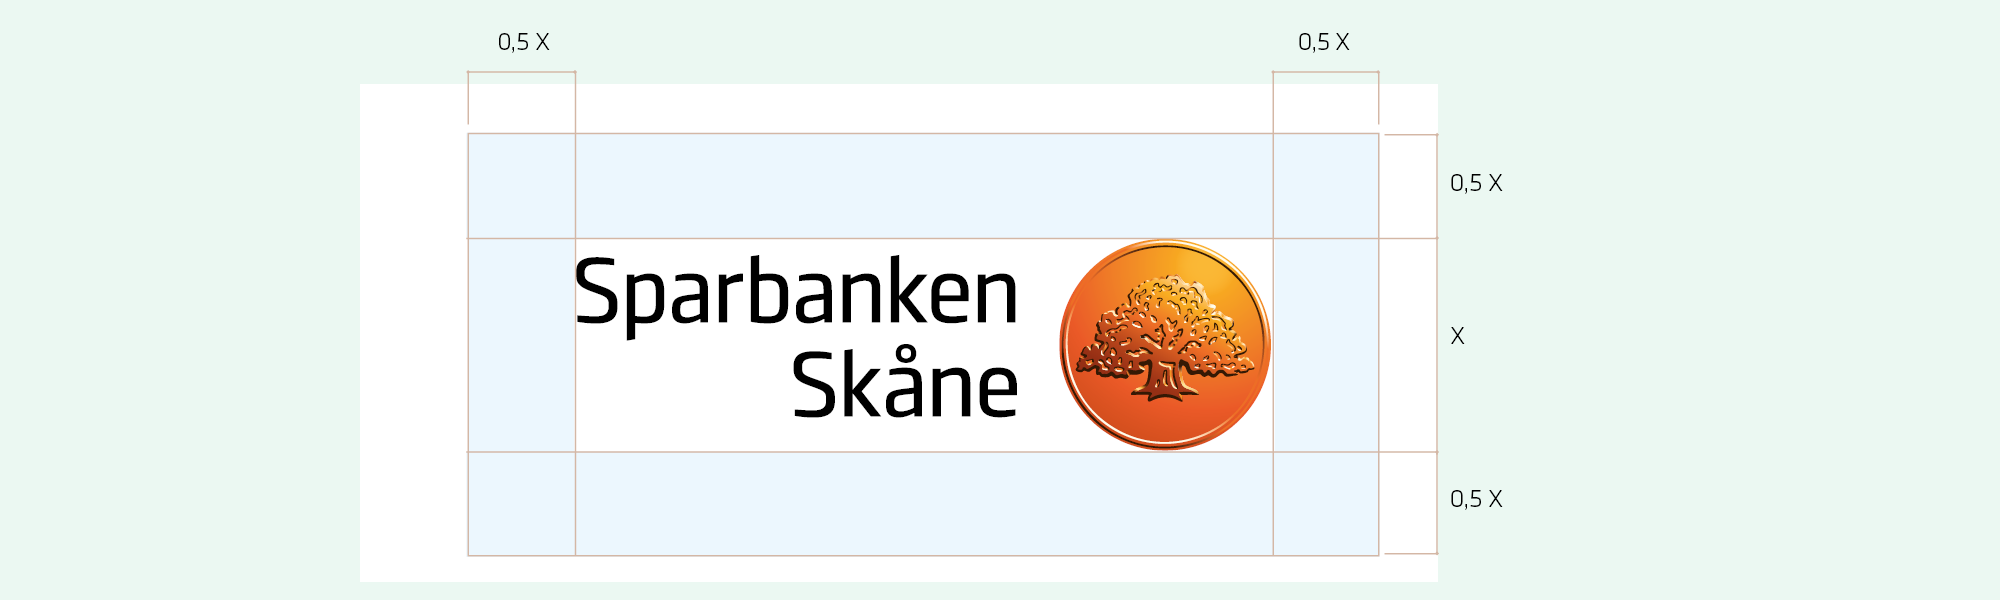 Frizoner logotyp Sparbanken Skåne